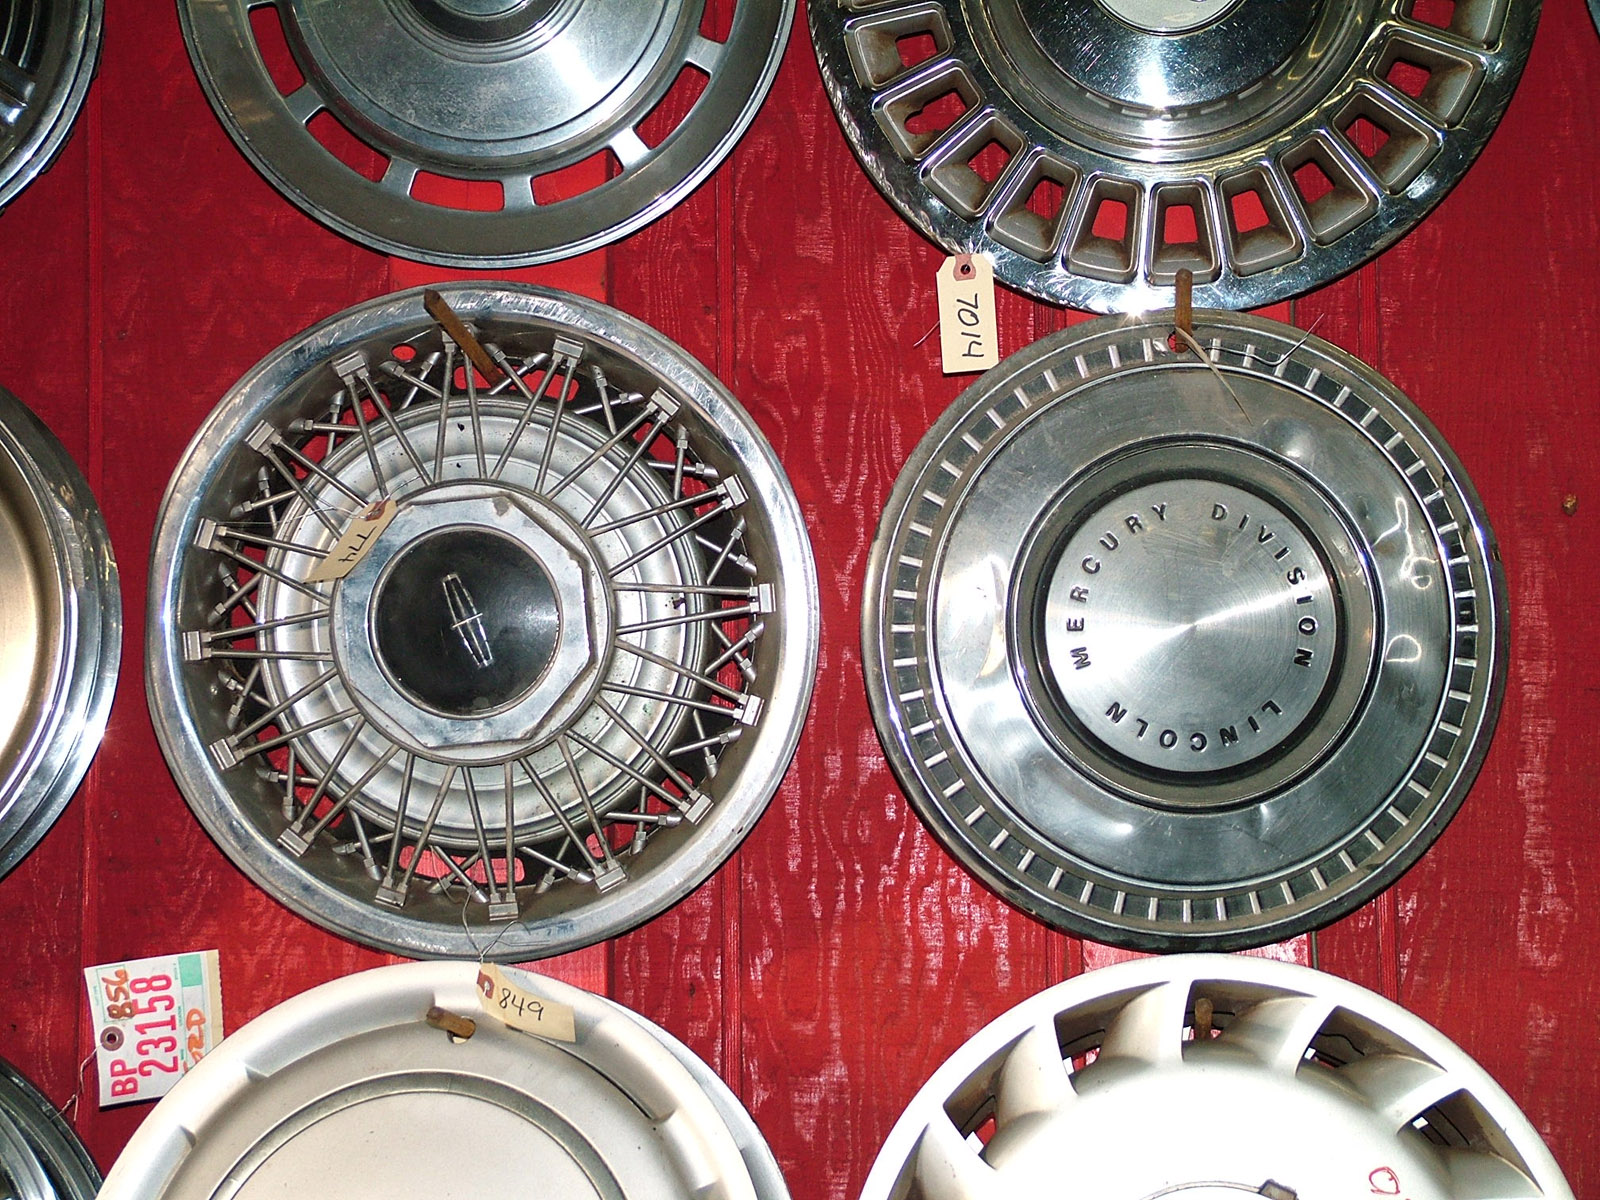 junk yard - hubcaps